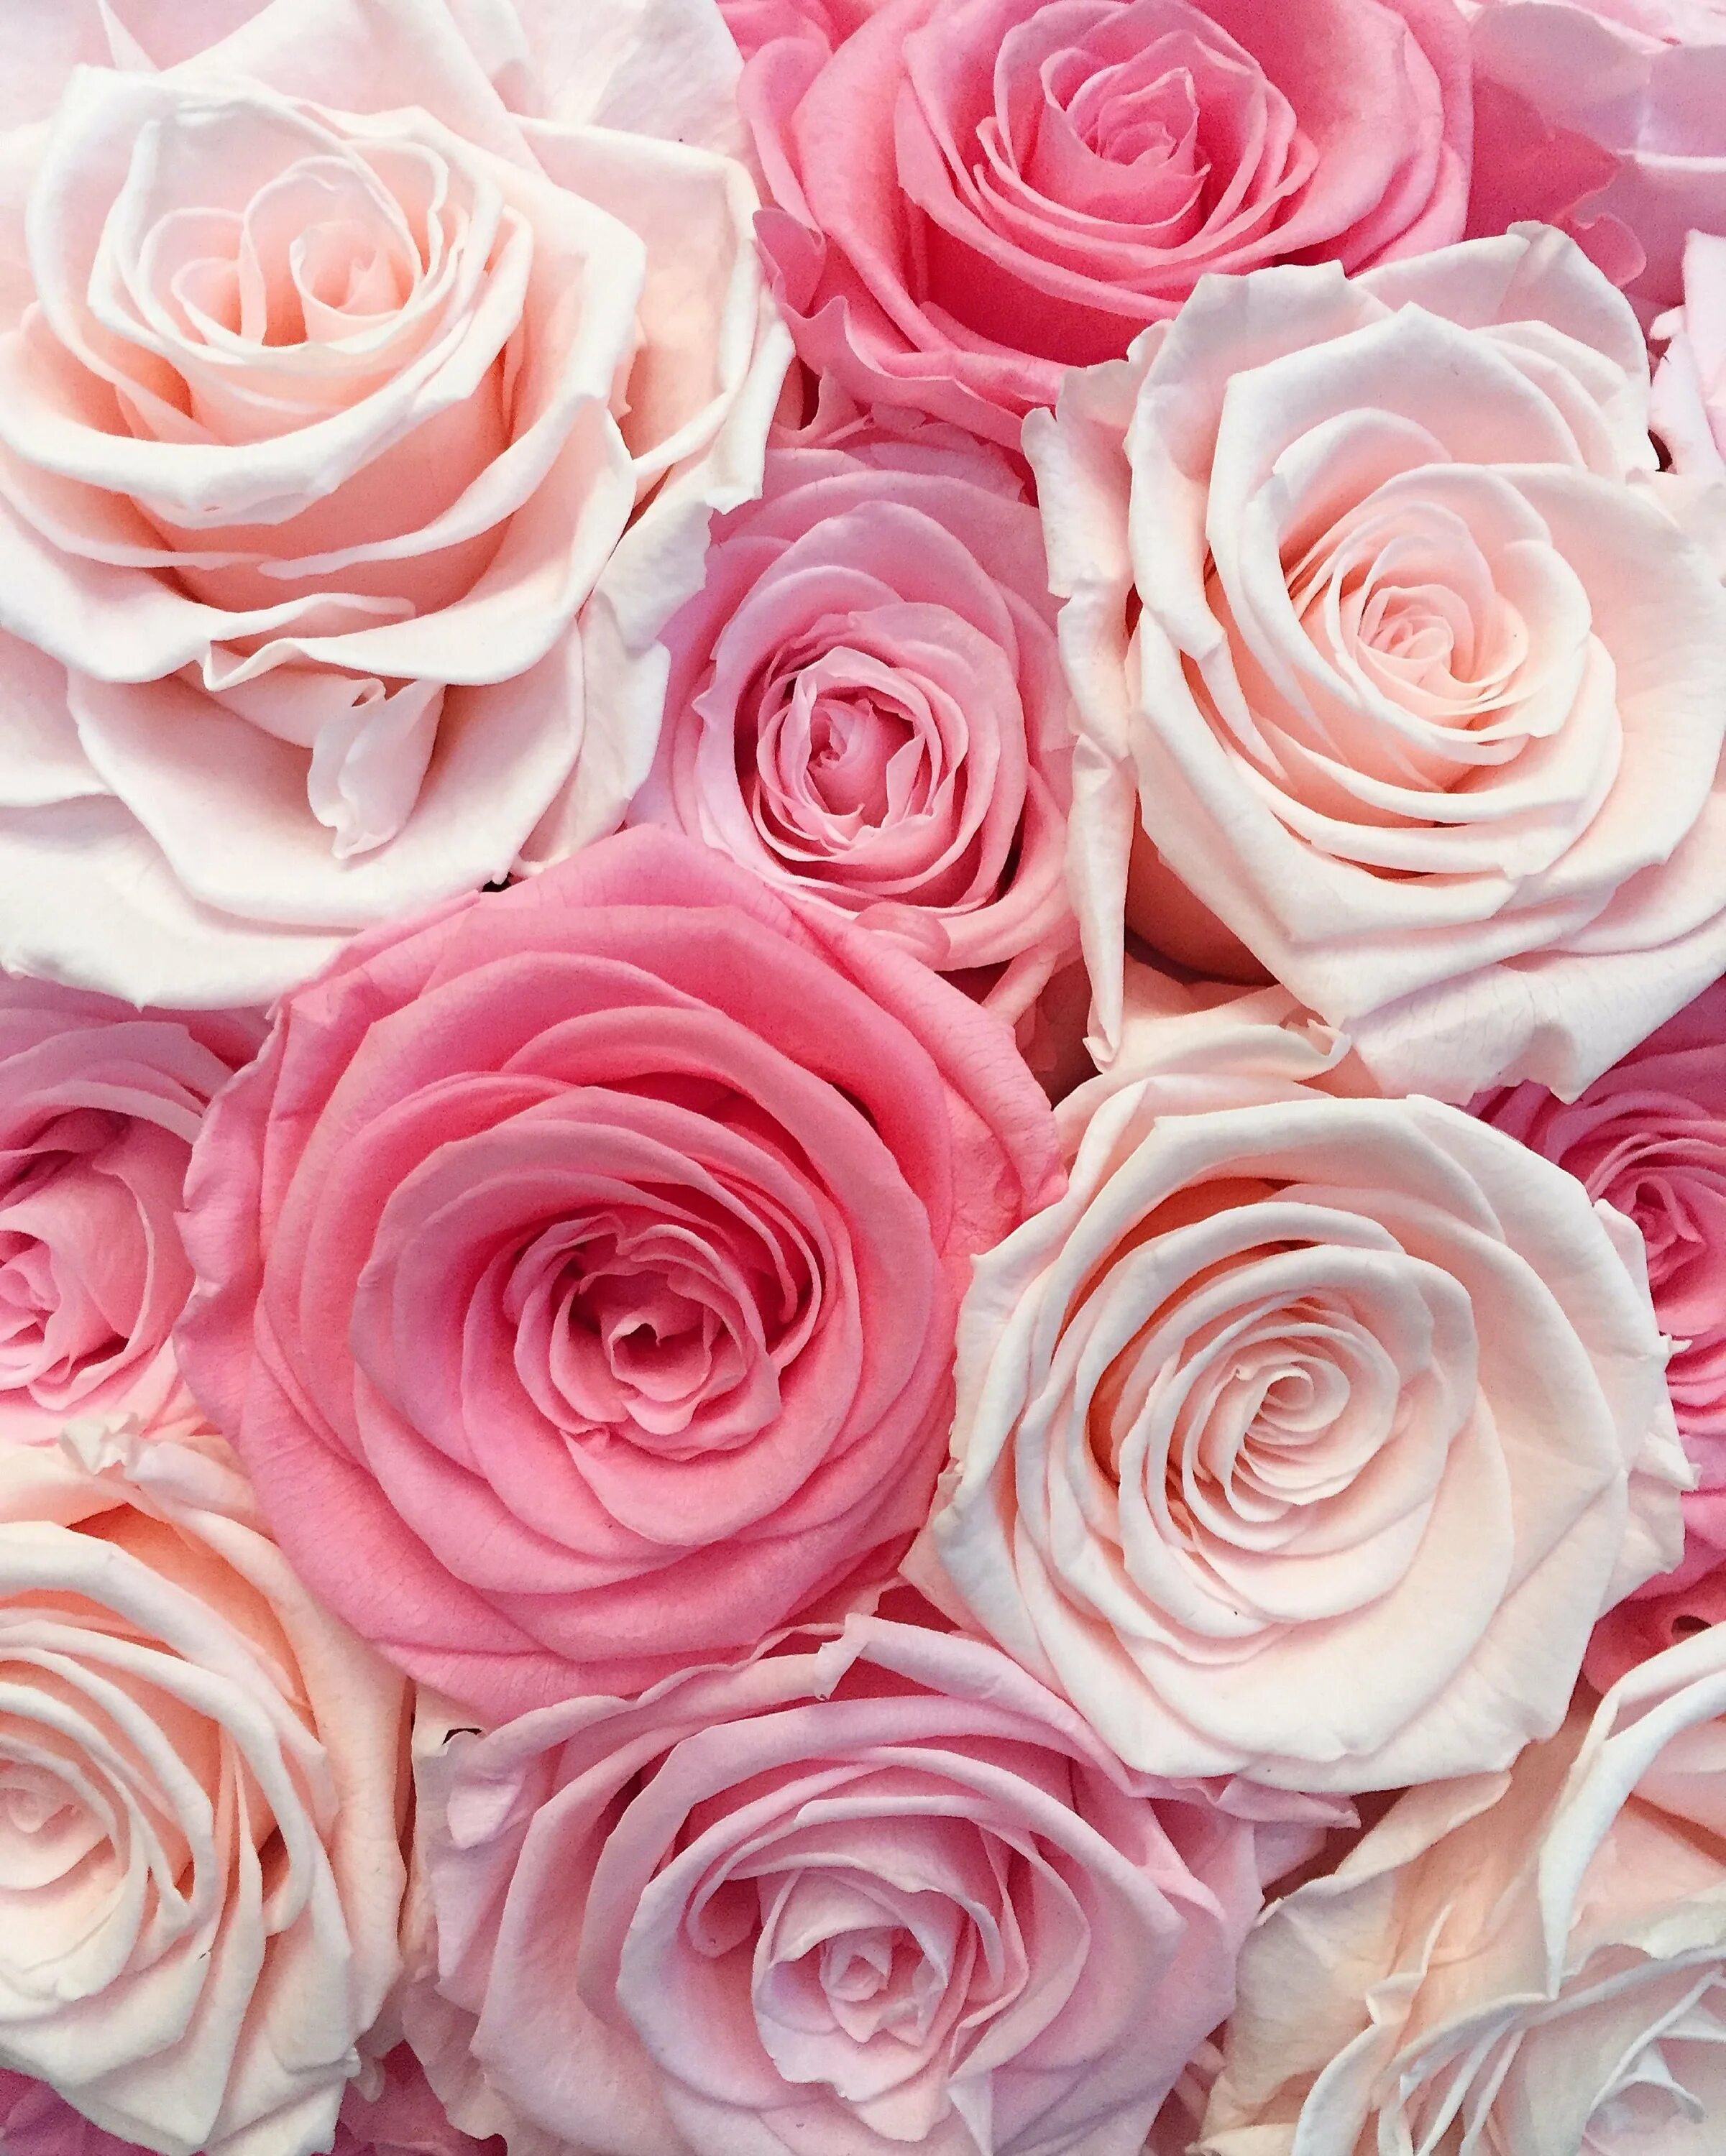 Картинки розов. Розы Пинк Фловерс. Розовые розы. Бледно розовые розы. Роза нежно-розовая.